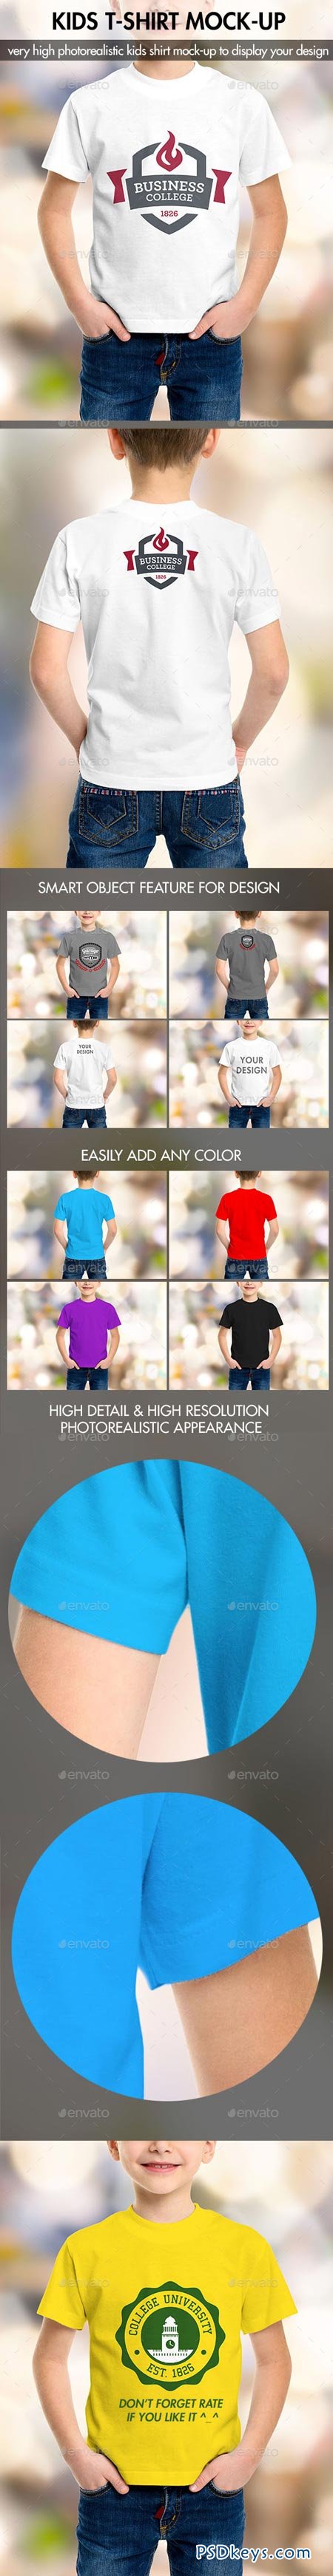 T-Shirt Photoshop Mock Up